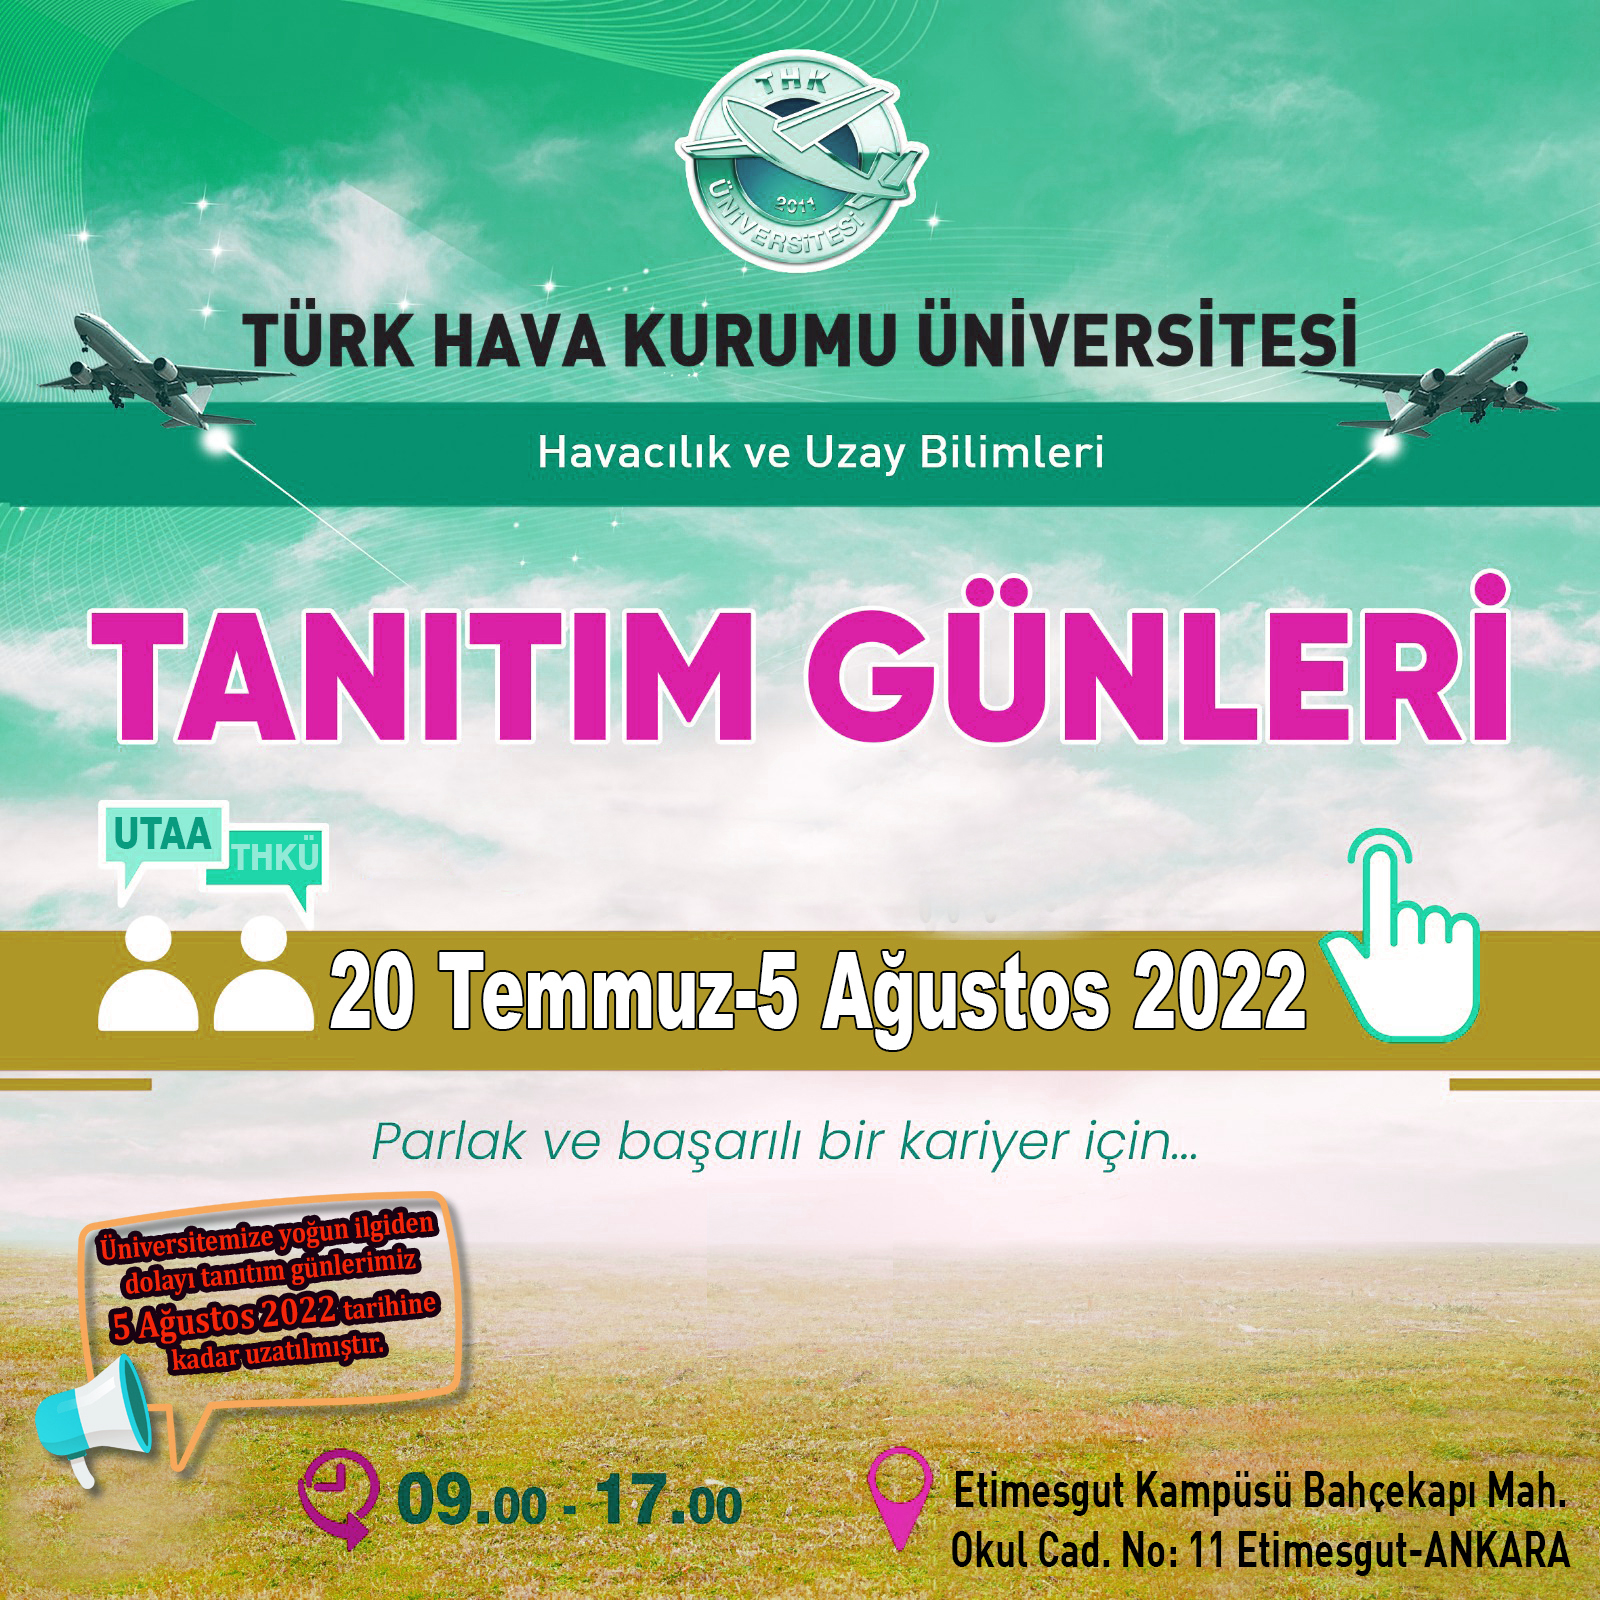 Üniversite Tanıtım Günlerimiz 20 Temmuz-5 Ağustos Tarihleri Arasında Türkkuşu Kampüsümüzde Gerçekleşecektir